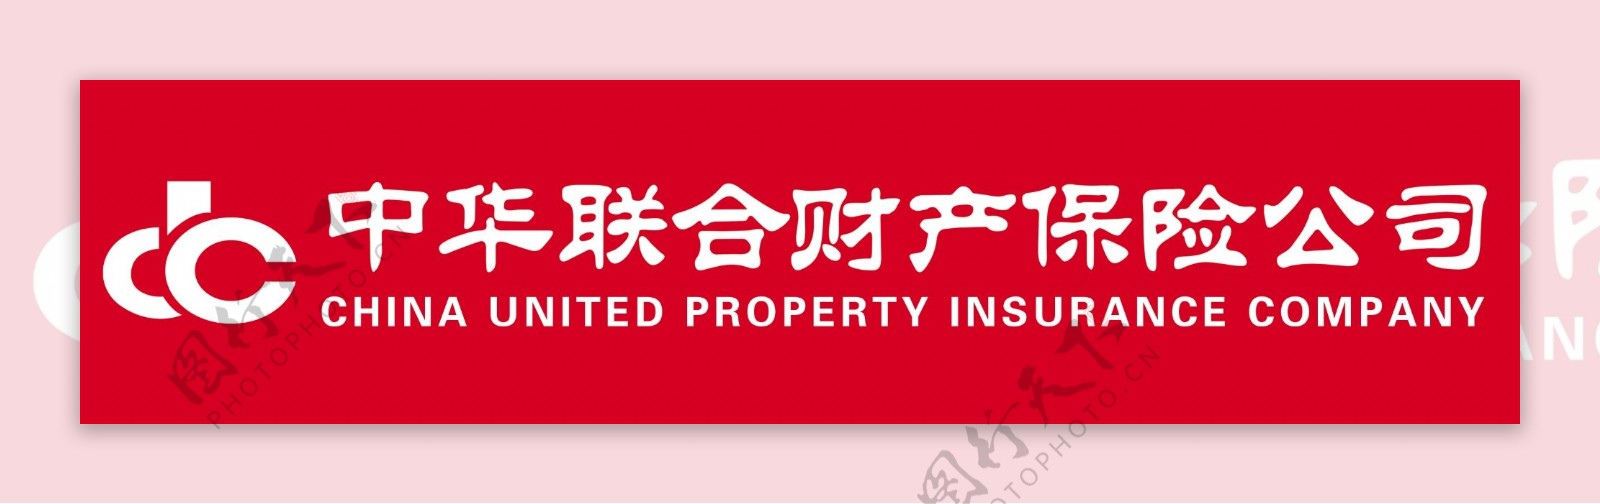 中华联合财产保险公司图片